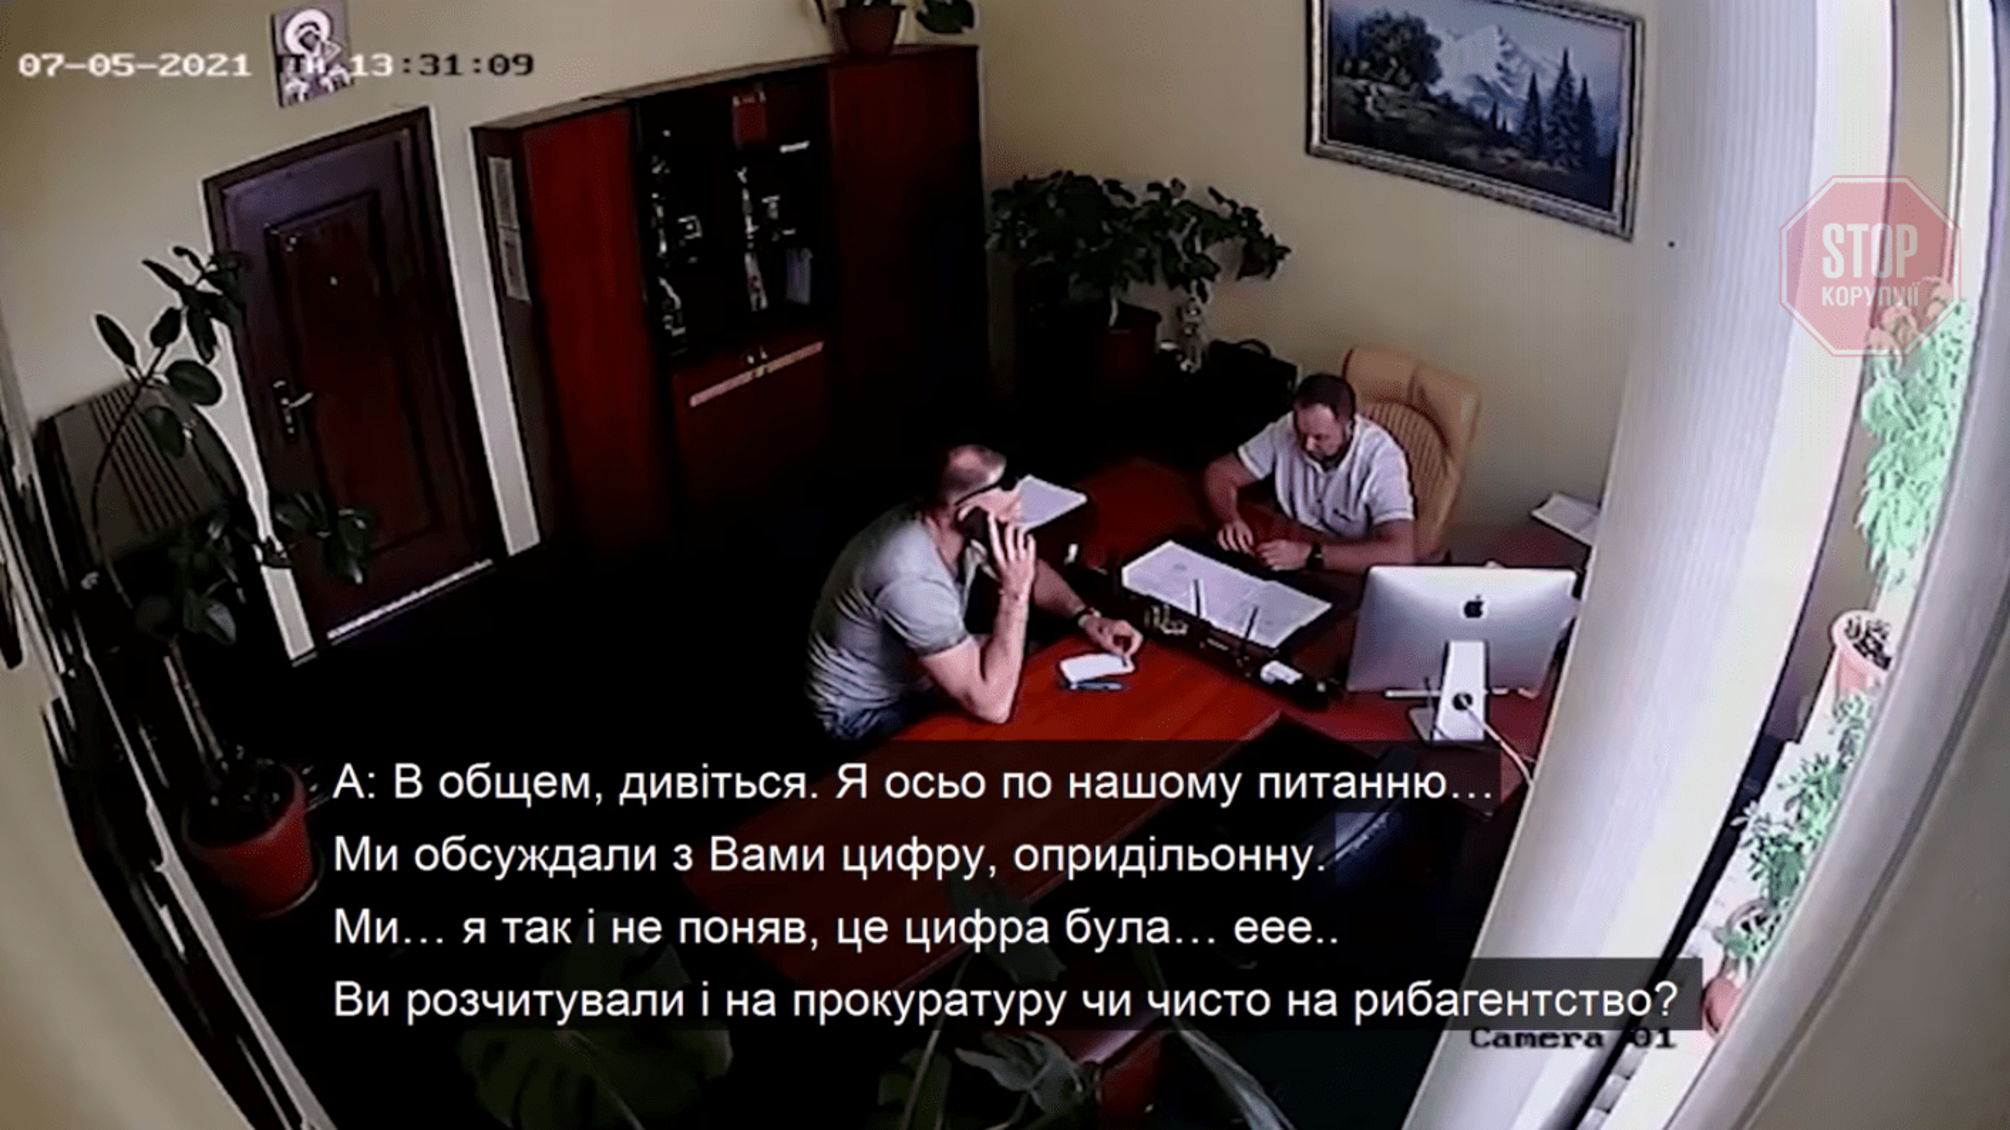 Начальнику Київського рибпатруля запропонували $10000 хабаря – він відмовився і «злив» зловмисника (відео)